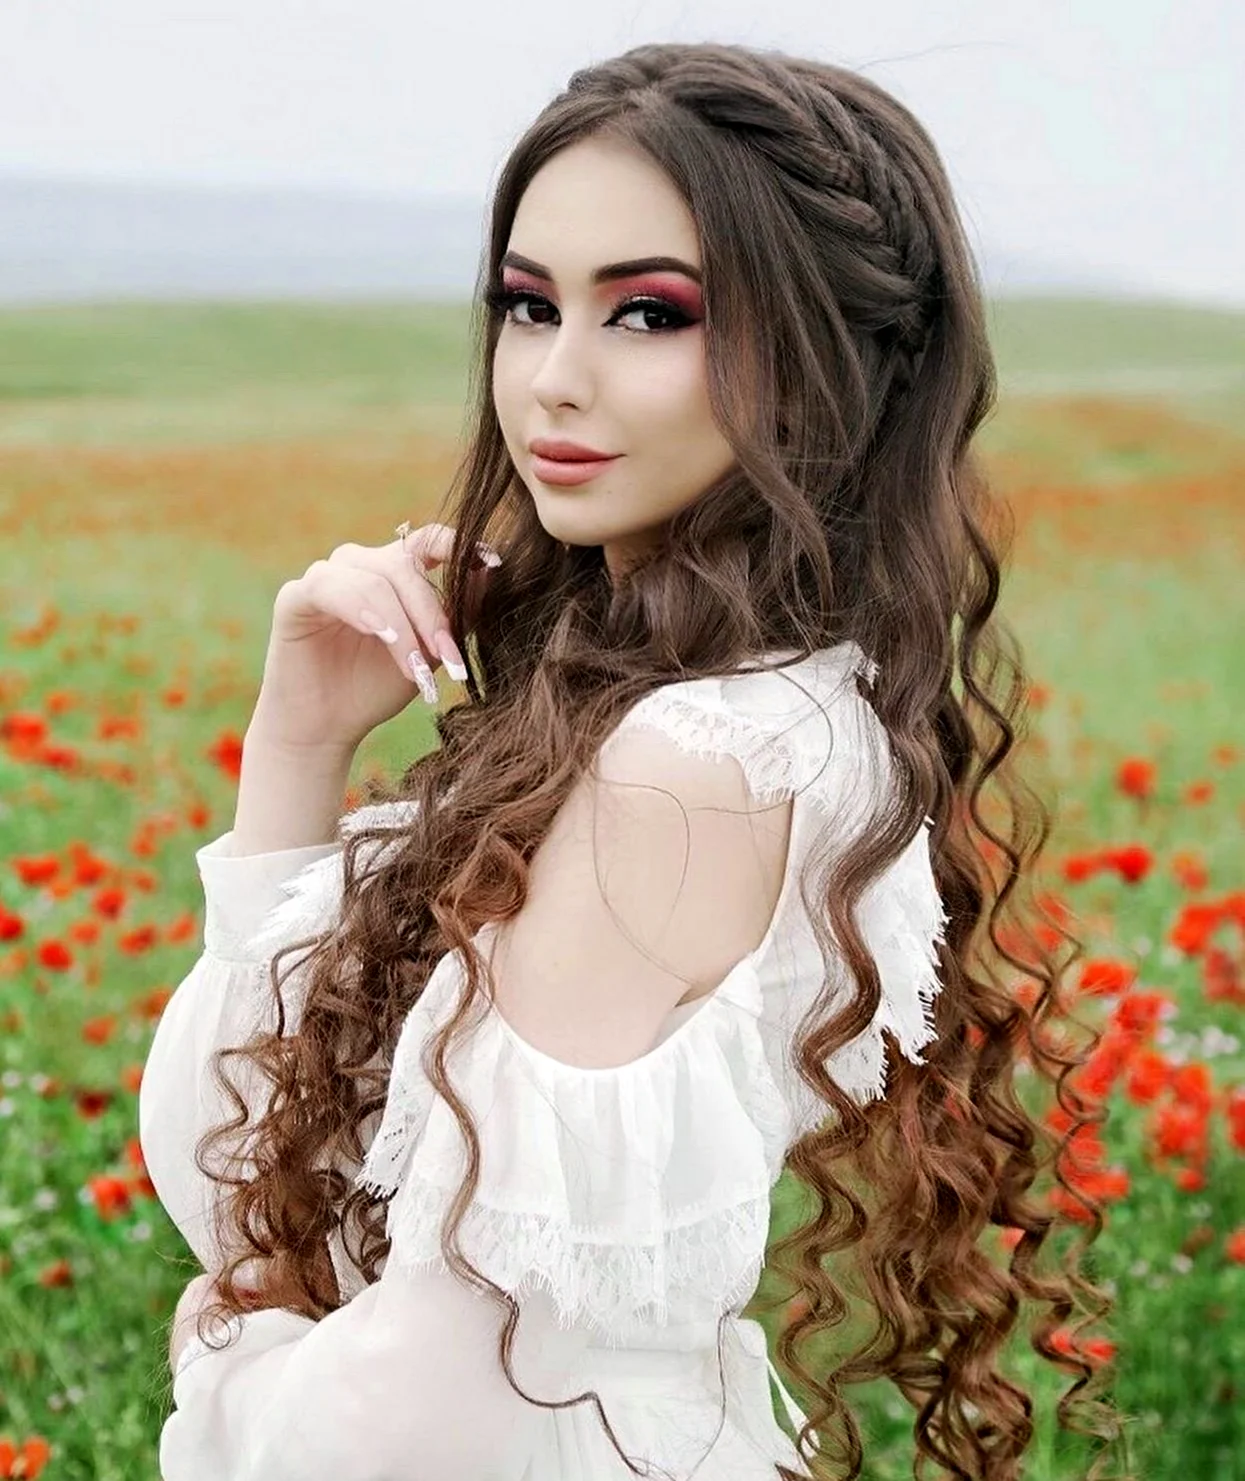 Таджикская модель Сафина Гаибова. Красивая девушка